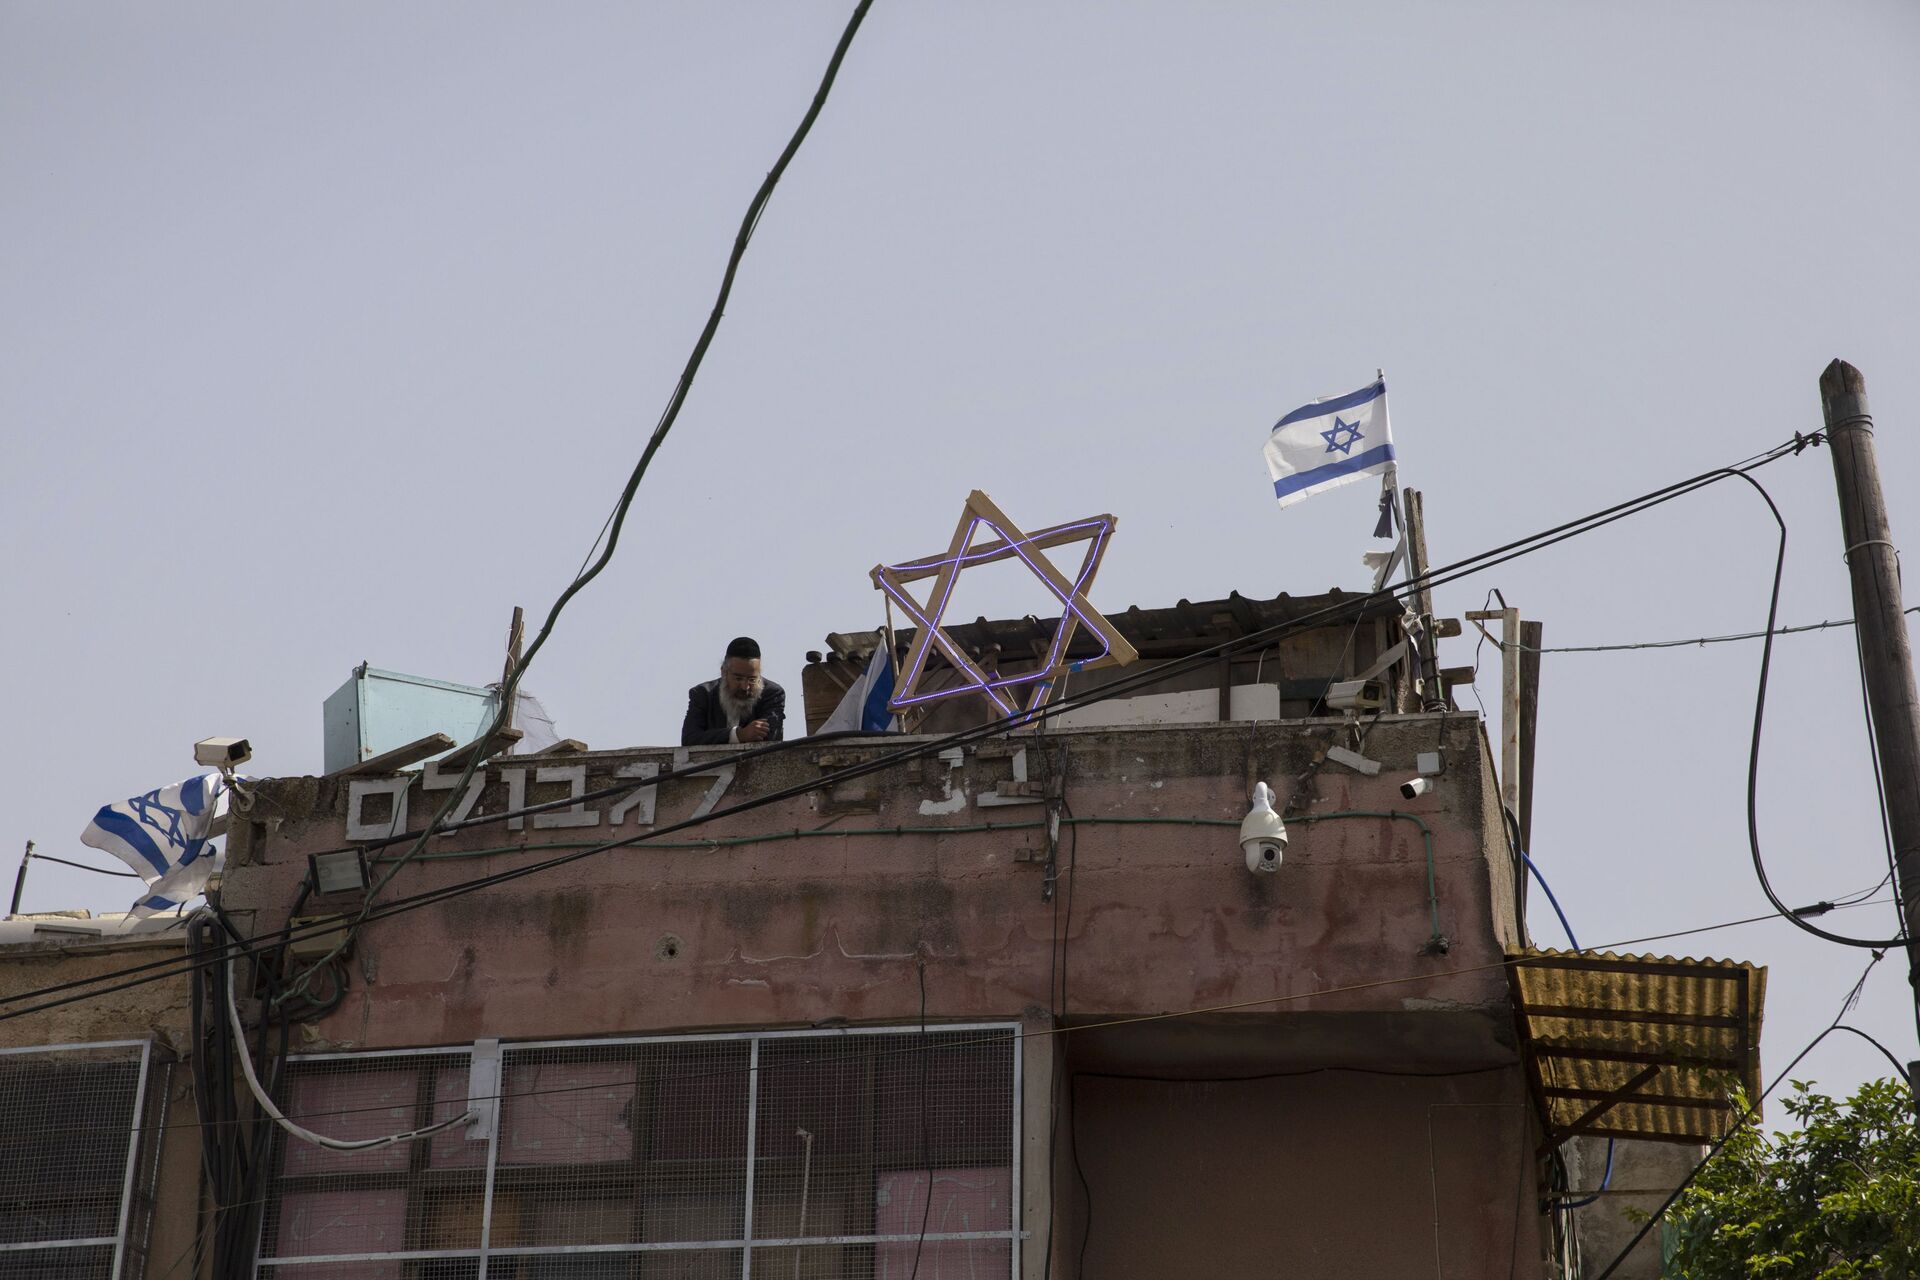 Rabbis Urge Haredi Jews to Skip Shavuot Western Wall Visit Amid Growing Tensions - Report - Sputnik International, 1920, 16.05.2021